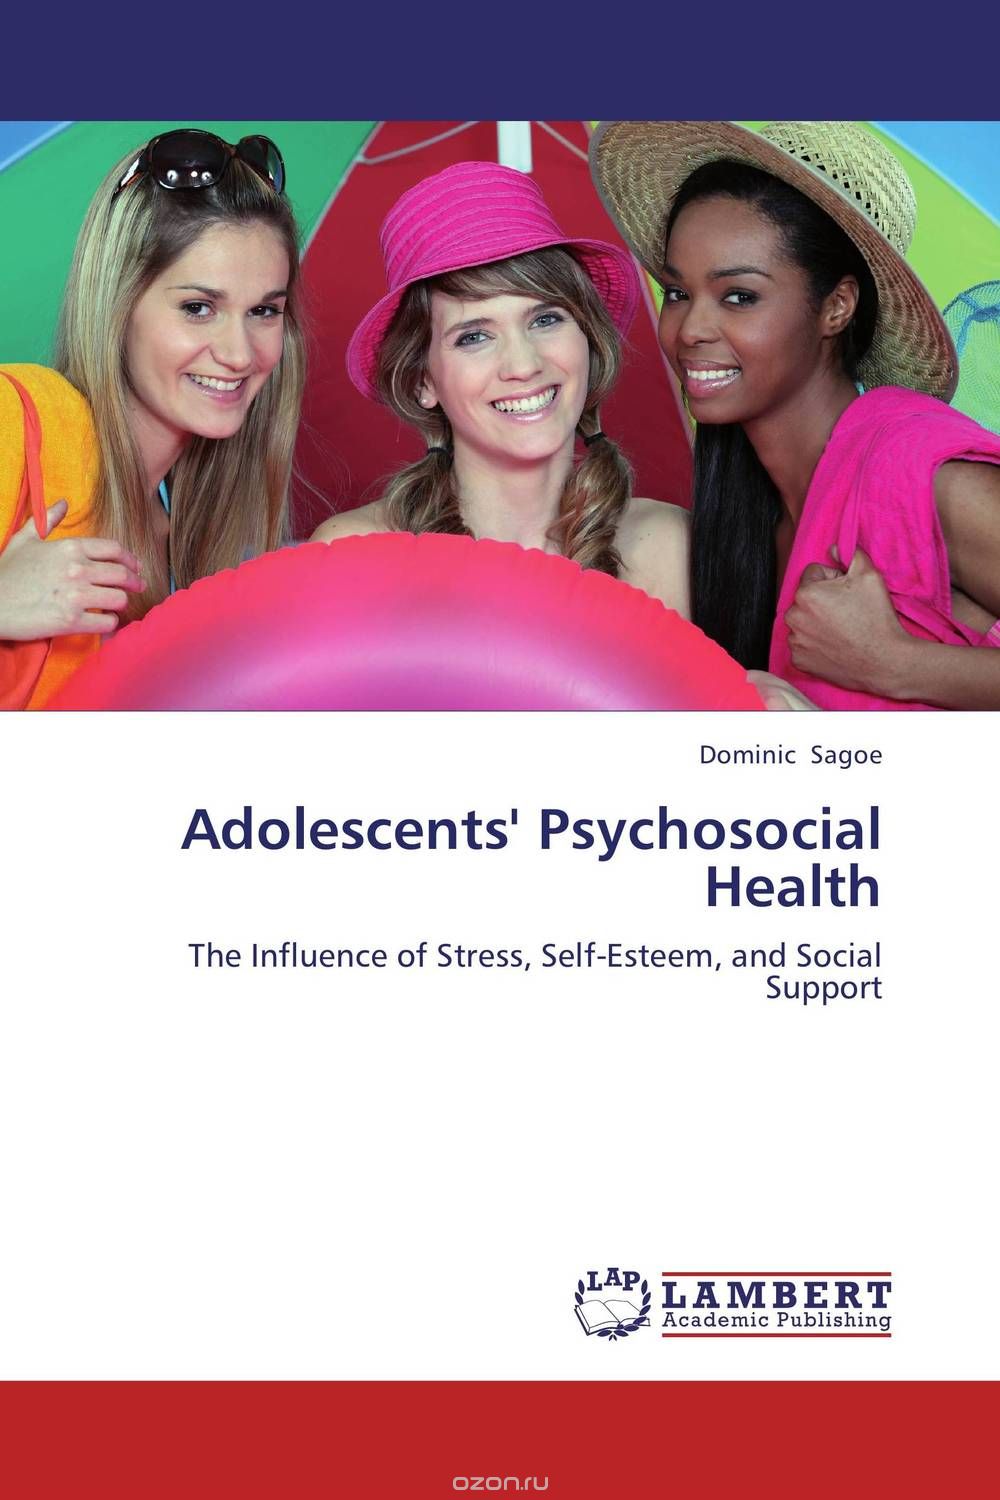 Скачать книгу "Adolescents' Psychosocial Health"